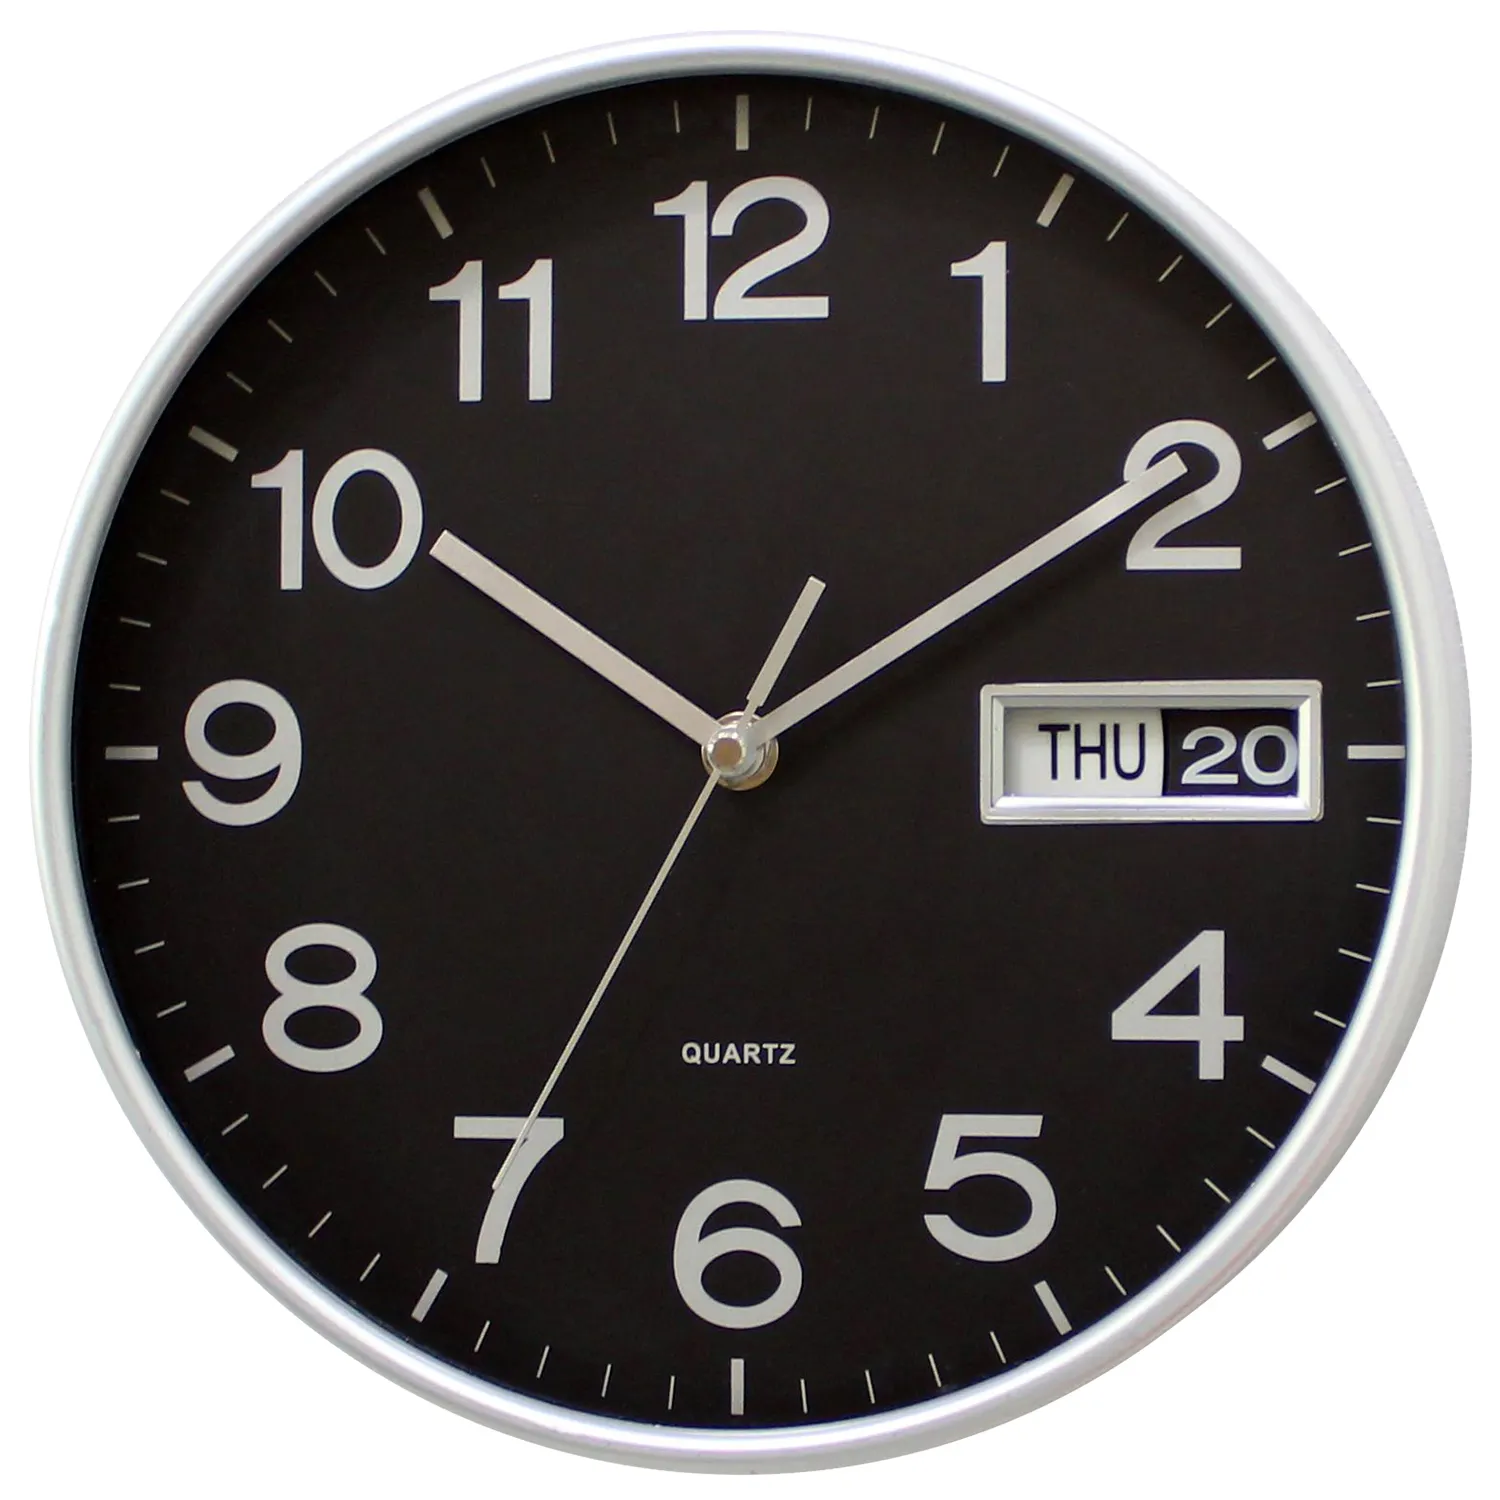 Reloj de pared de metal con calendario clásico plateado metálico de lujo moderno reloj de pared redondo día y fecha para sala de estar